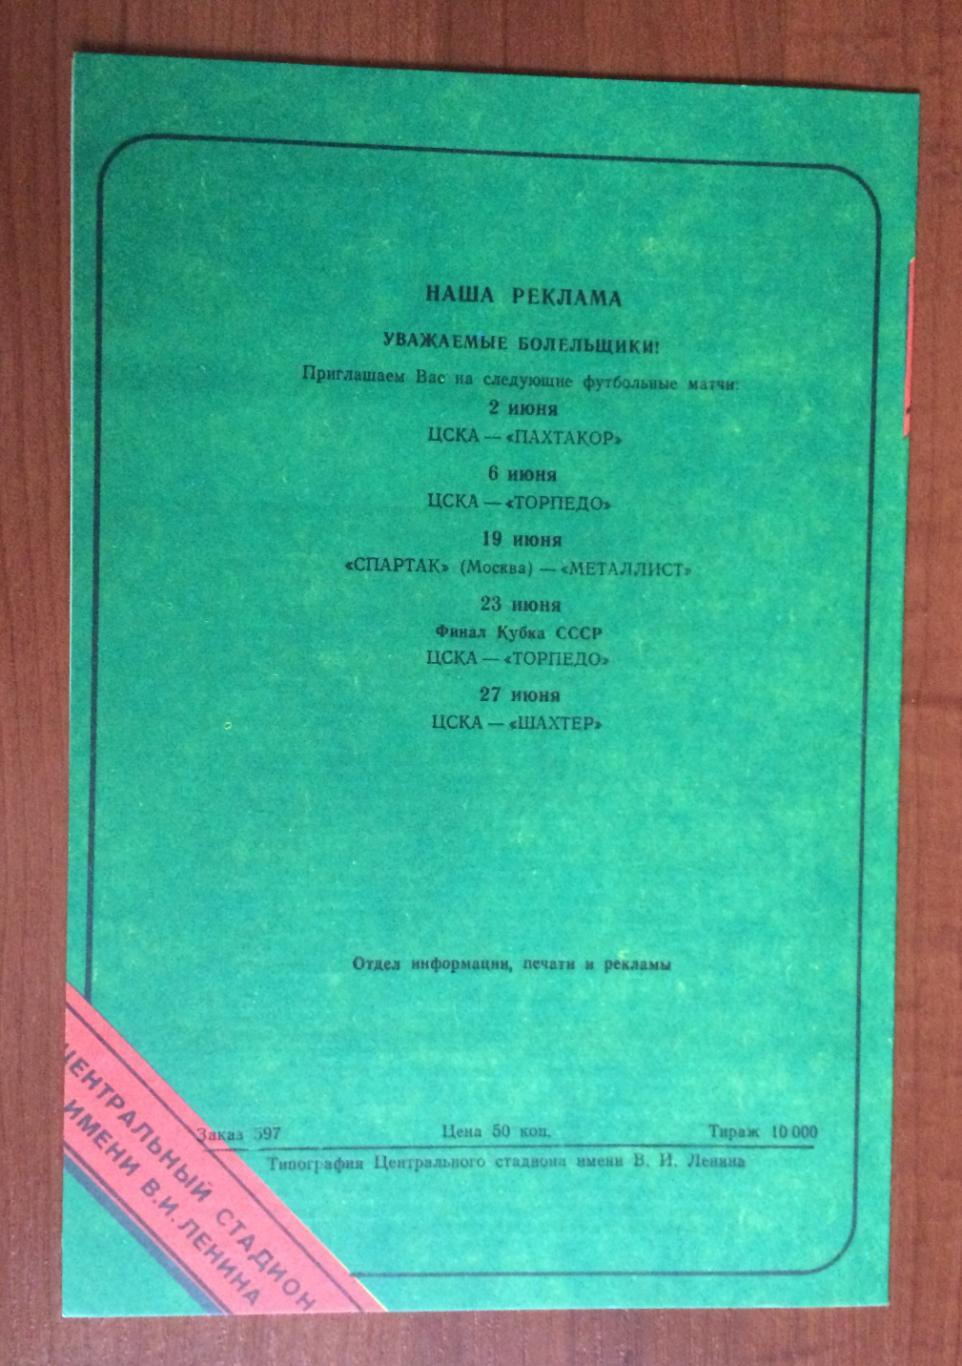 Программа Россия - Кипр 29.05.1991 год 1